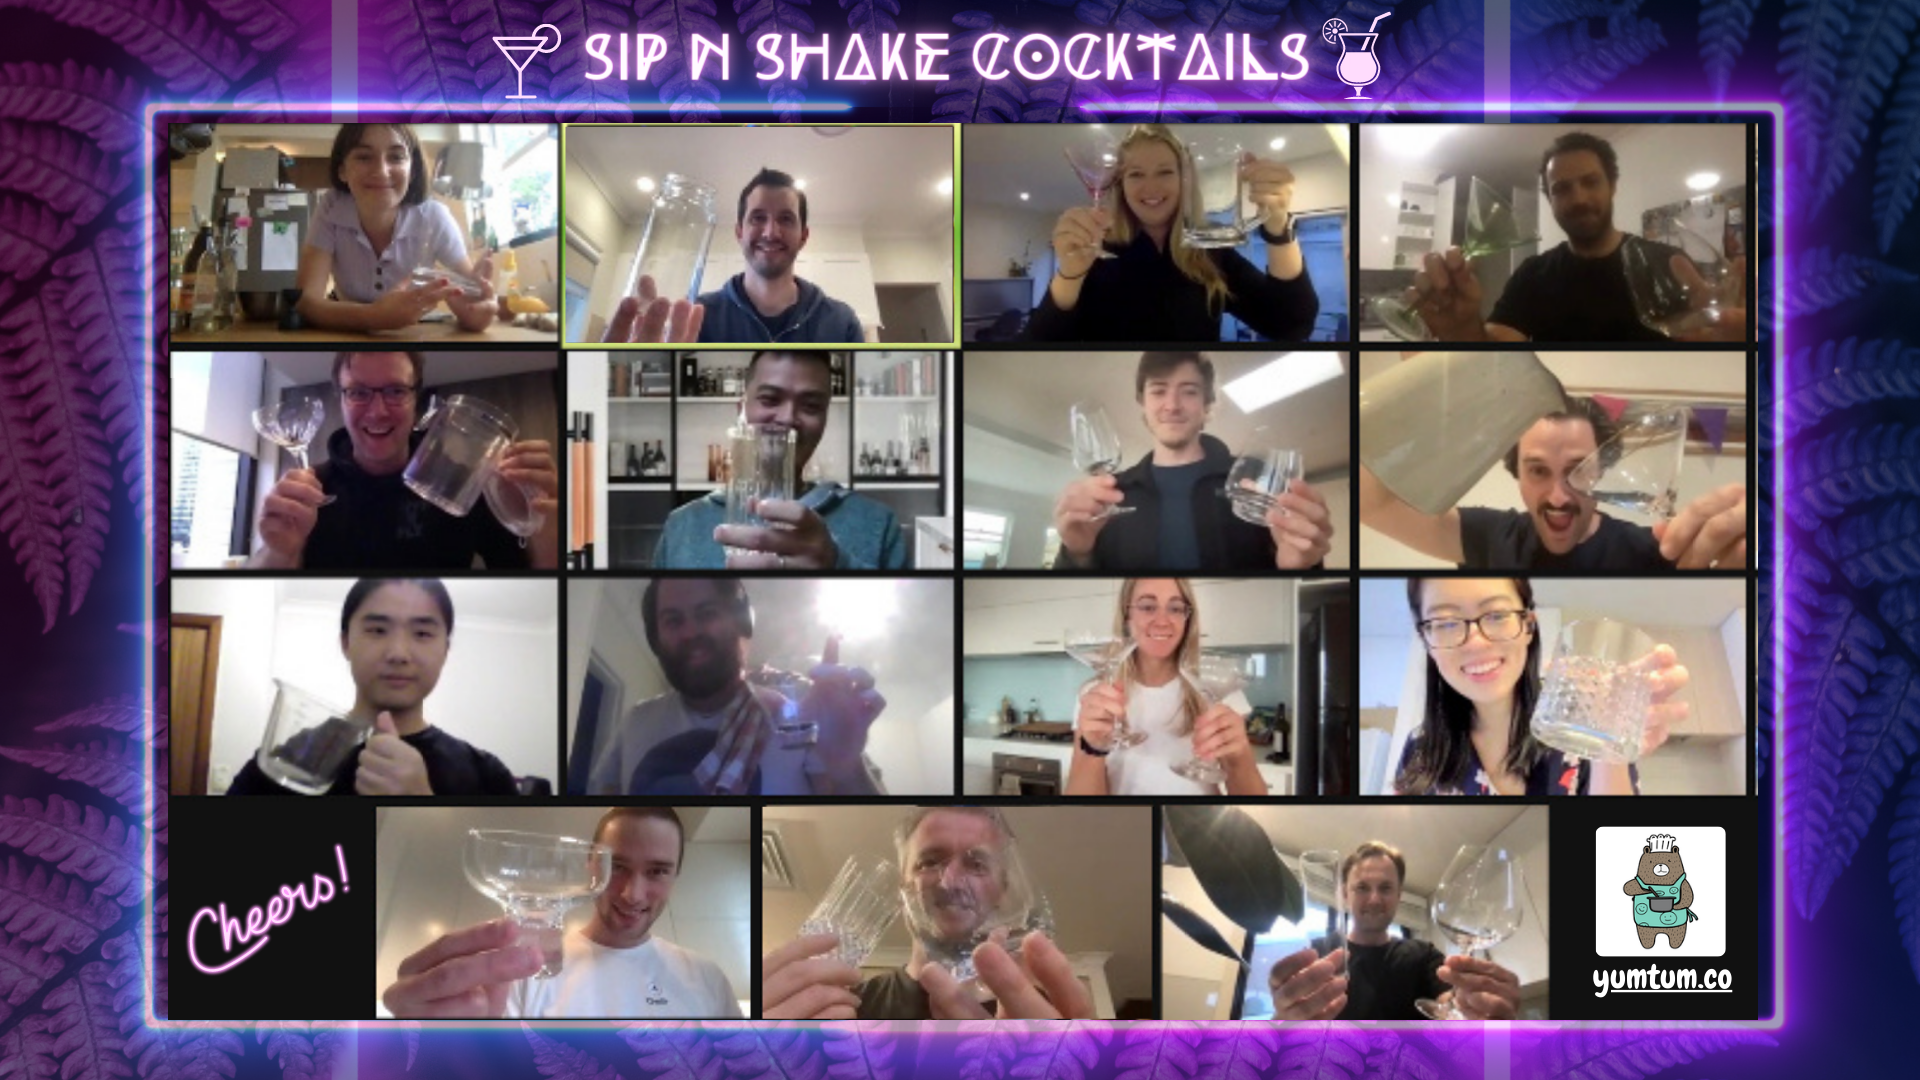 Sip N Shake Virtual Happy Hours (4)